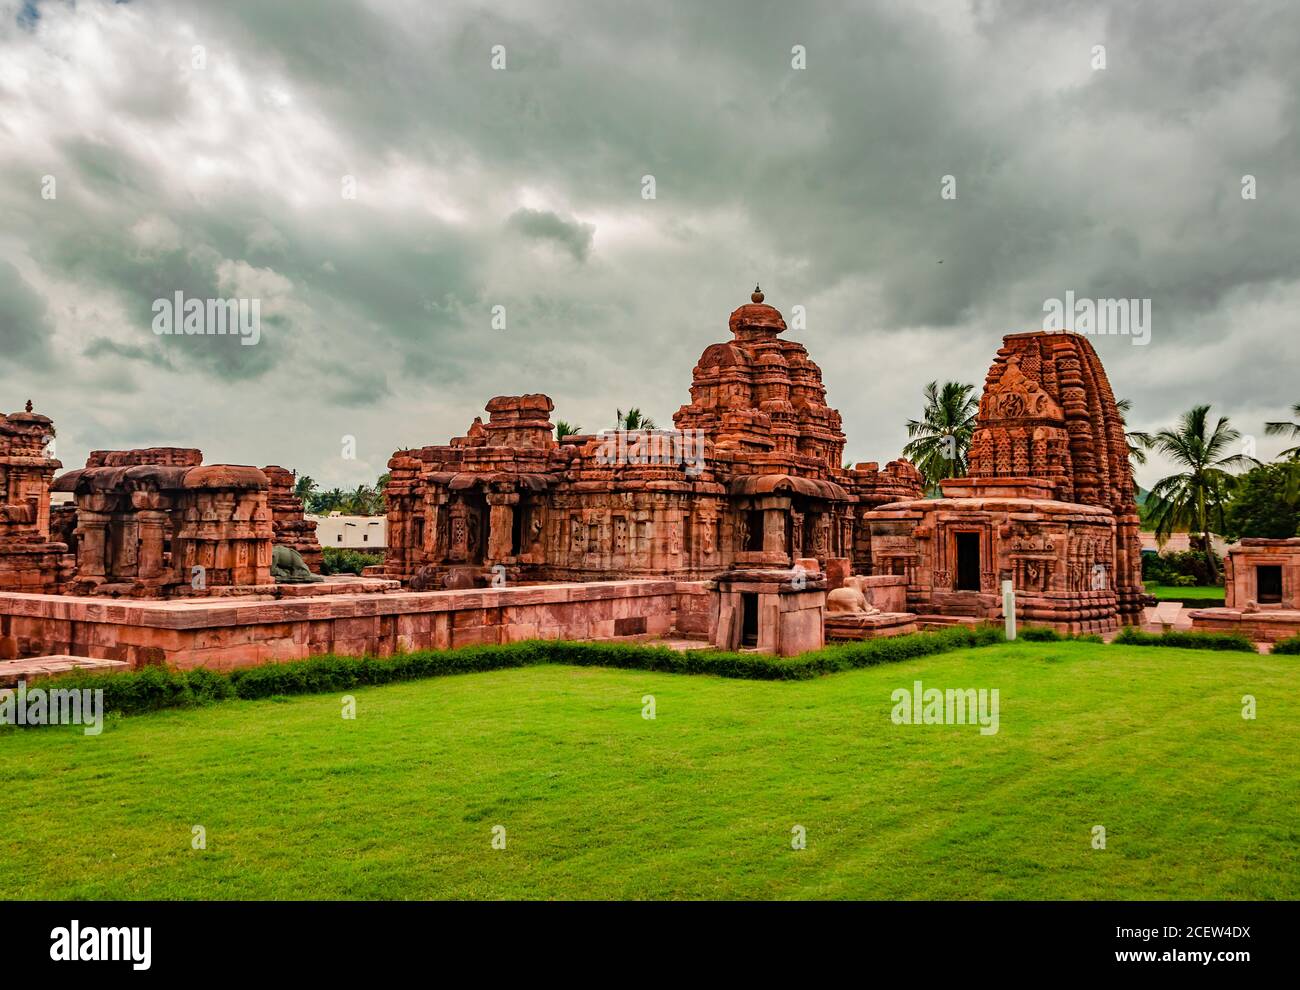 pattadakal temple groupe de monuments à couper le souffle art de pierre de différents angles avec ciel dramatique. C'est l'un des sites du patrimoine mondial de l'UNESCO et co Banque D'Images